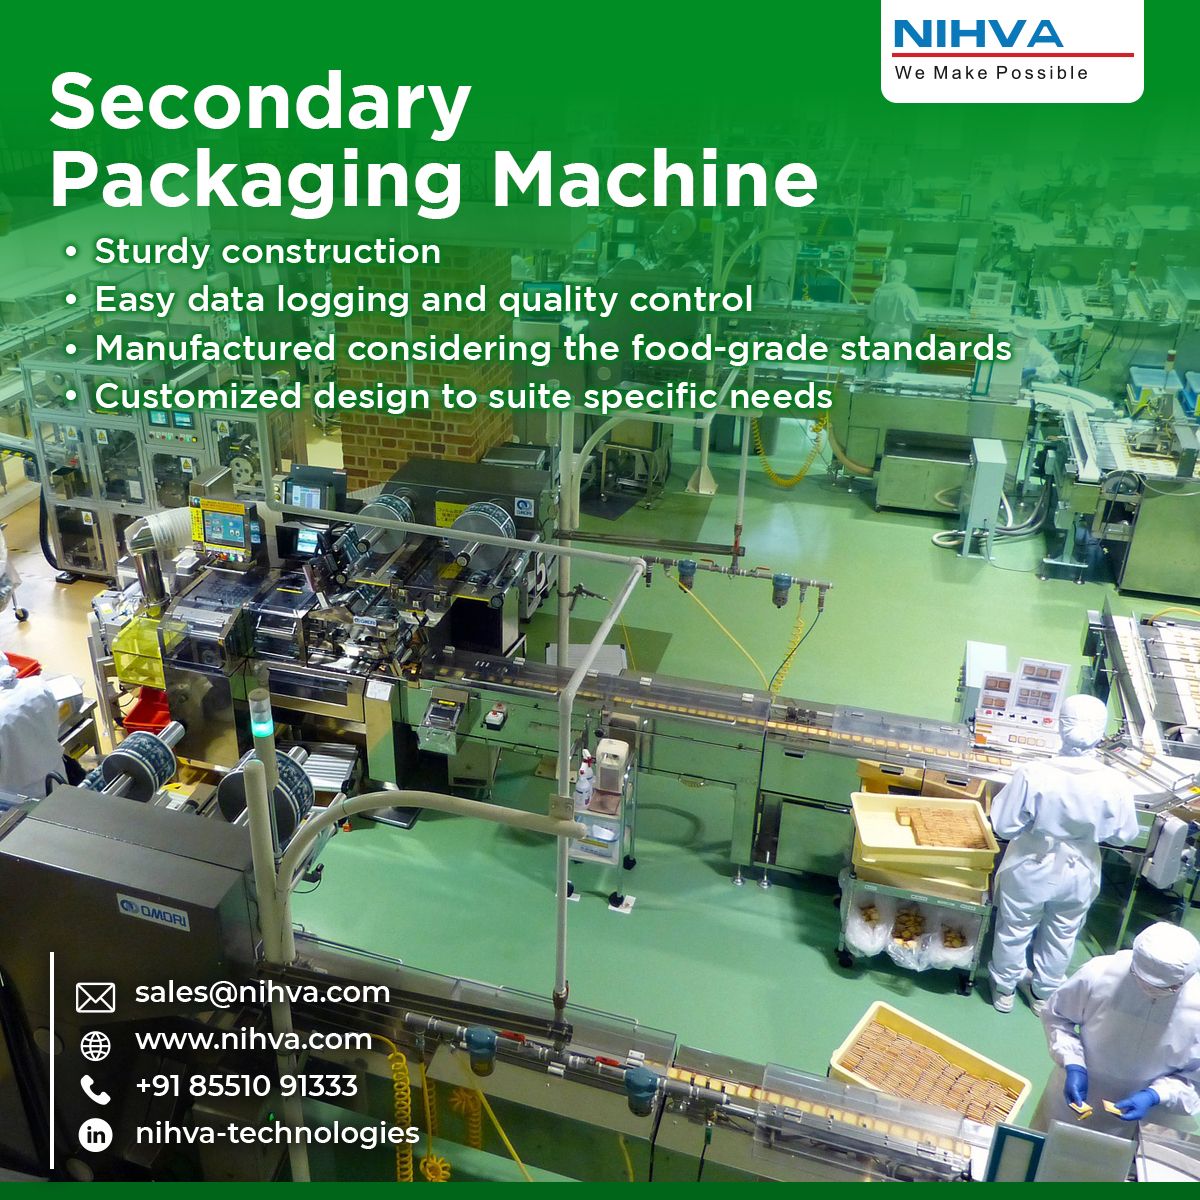 Box packing machine | Automatic packing machine | Secondary Packaging Machine | NIHVA